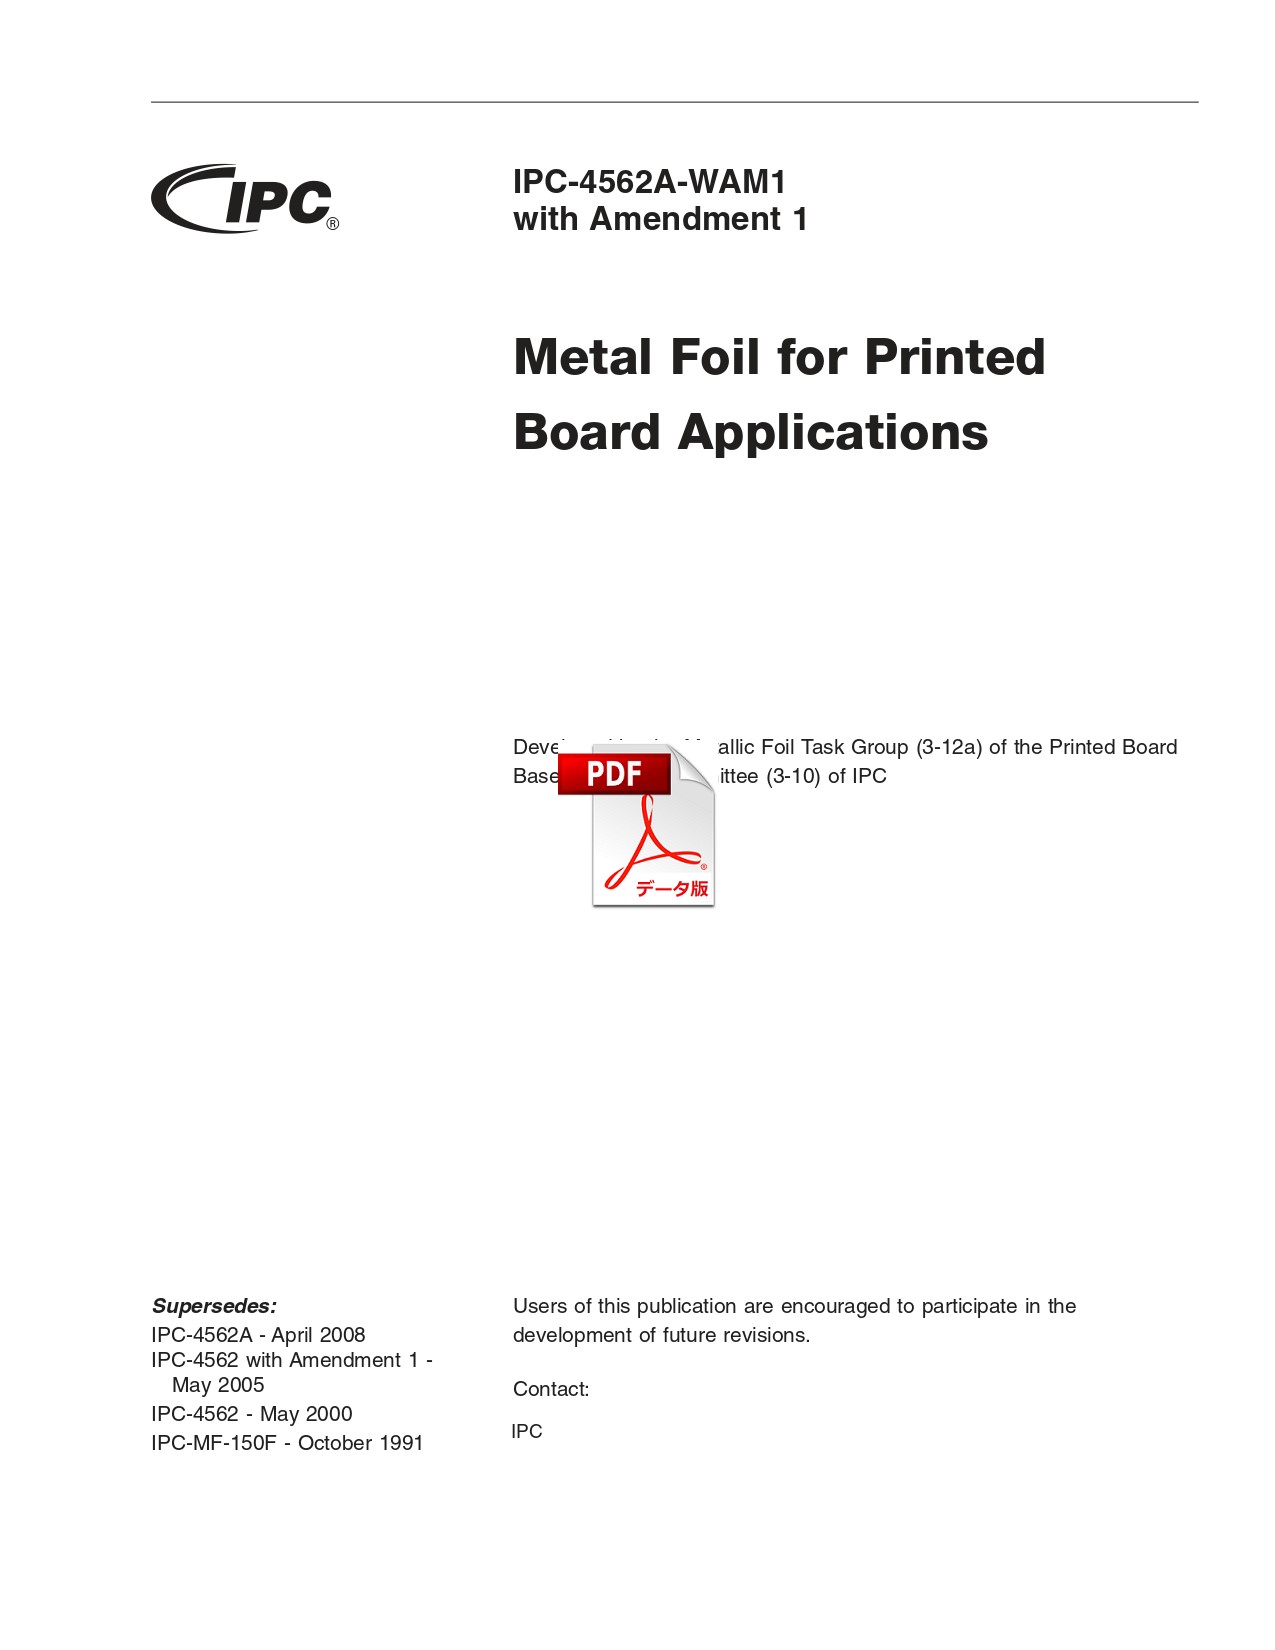 【英語版】IPC-4562A-WAM1: Metal Foil for Printed Board Applications